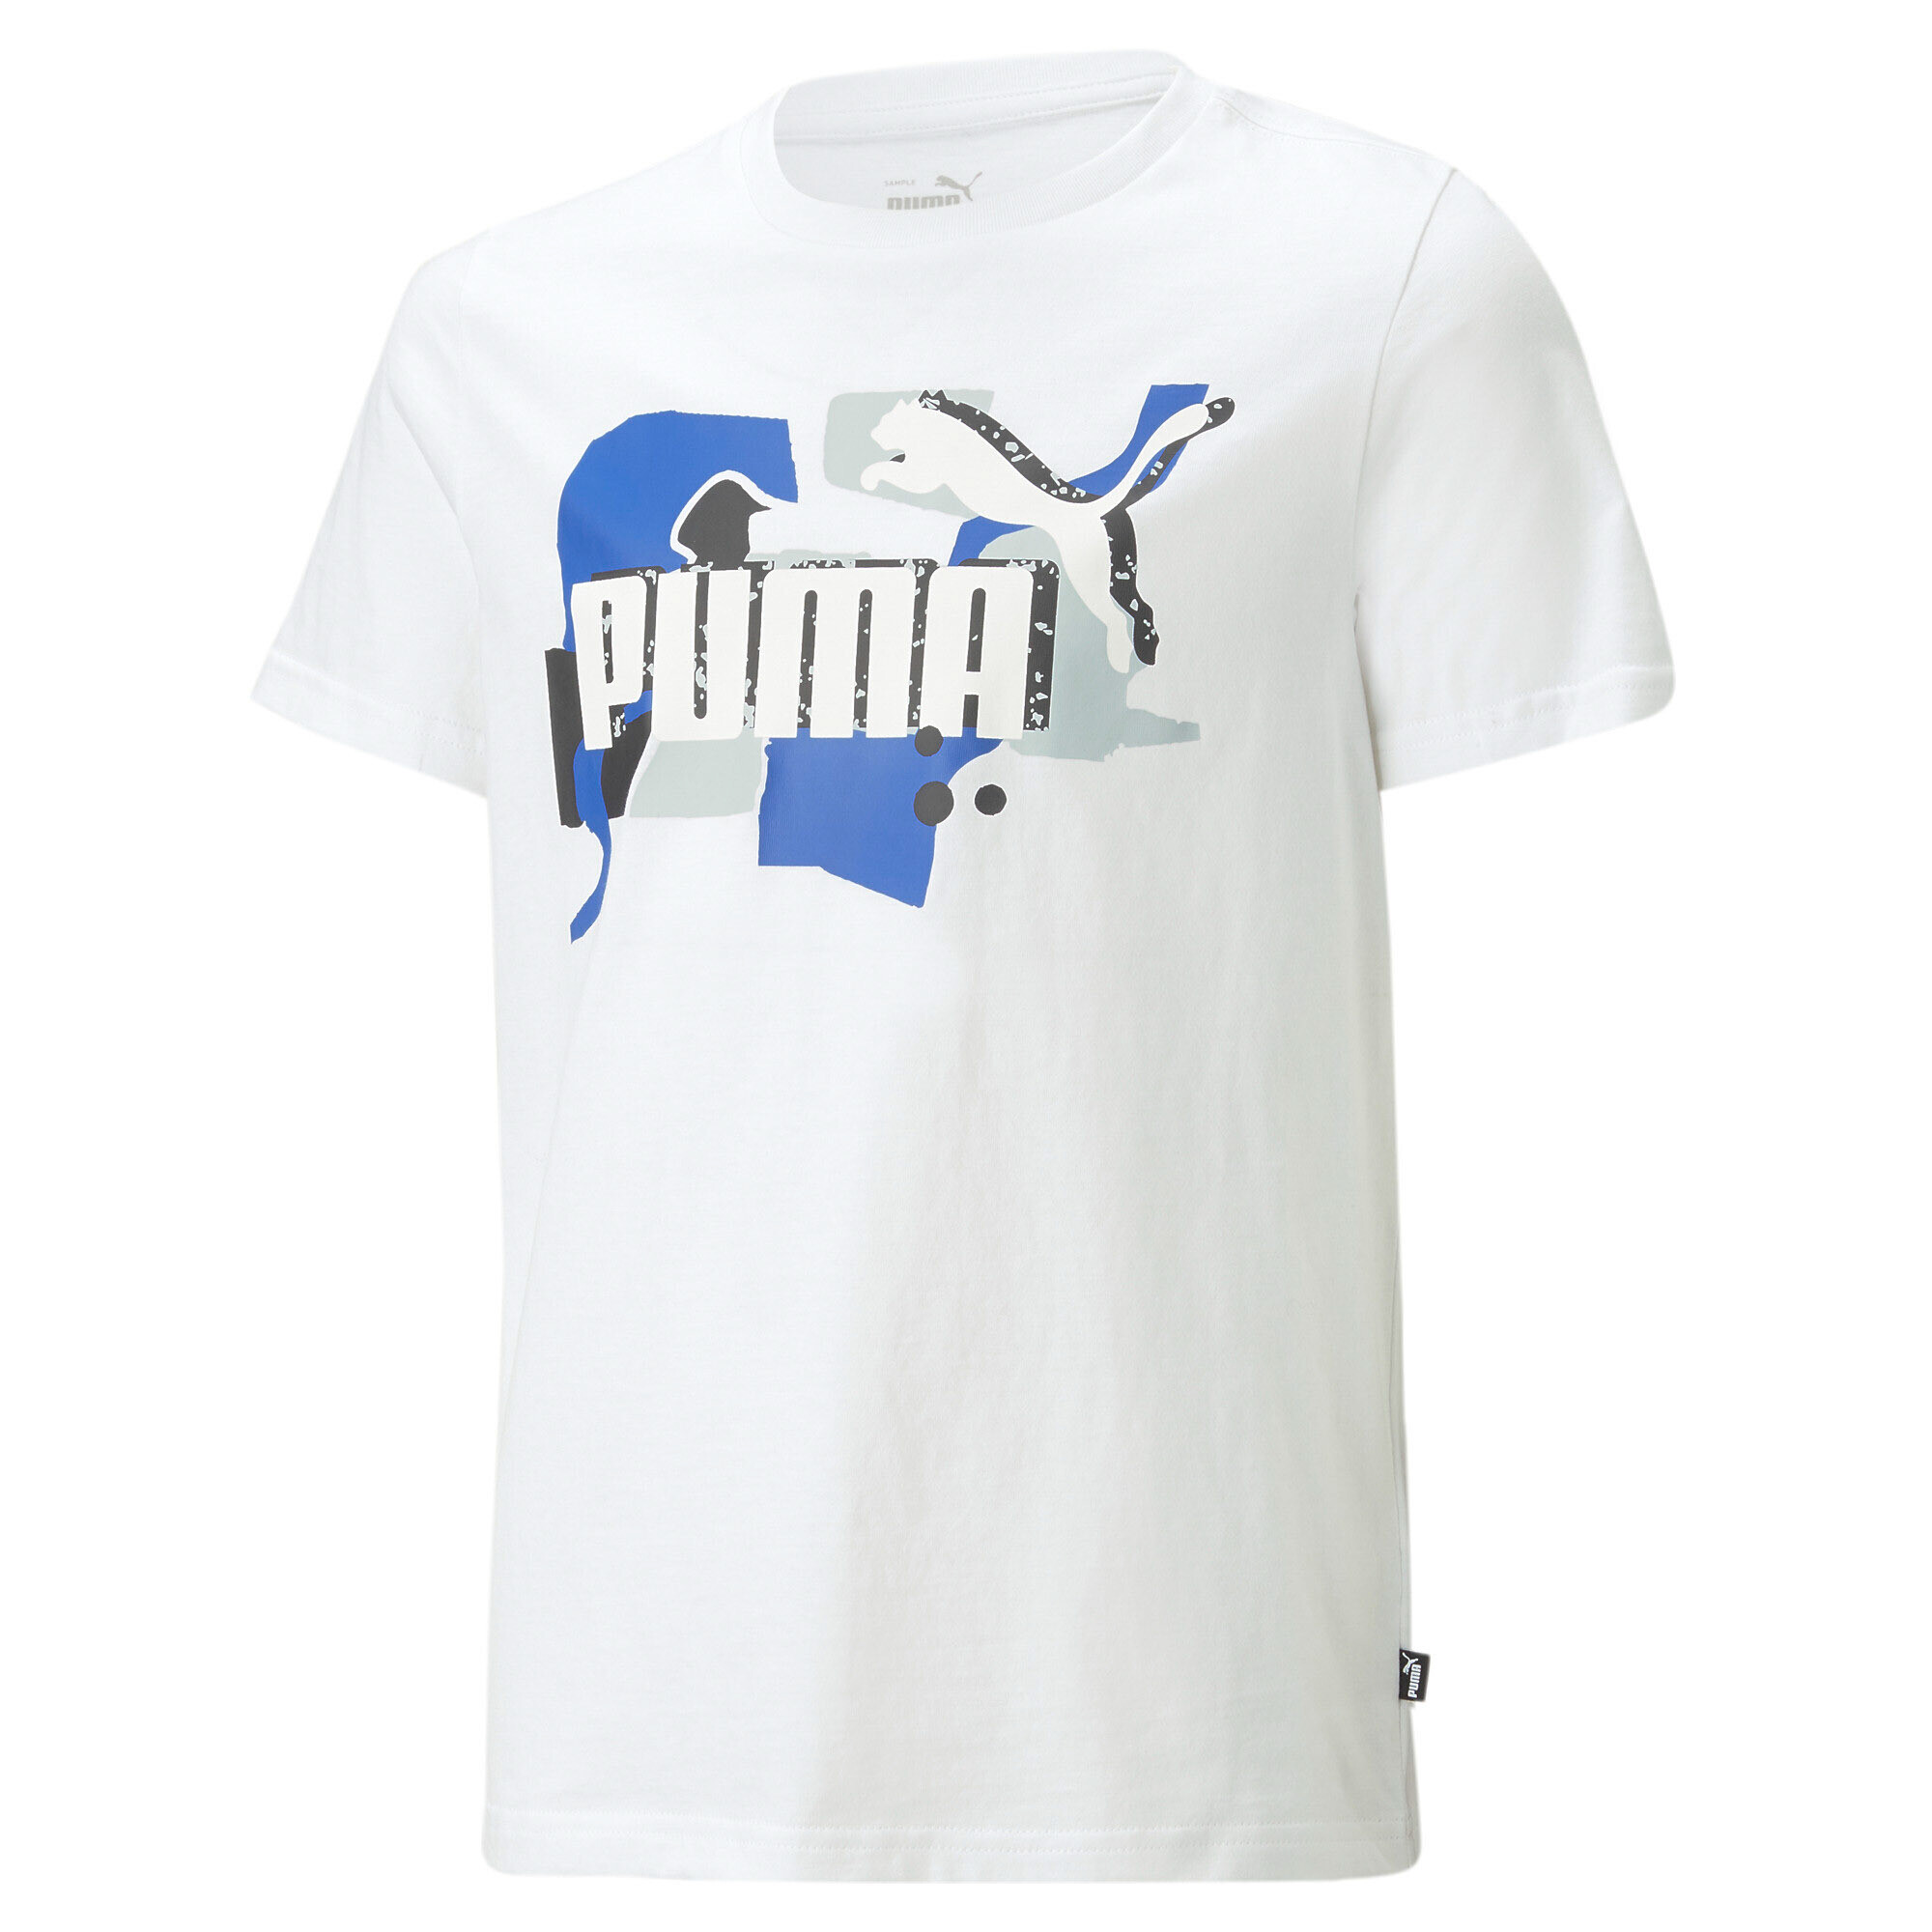 30%OFF！＜プーマ公式通販＞ プーマ キッズ ボーイズ ESS+ ストリートアート ロゴ 半袖 Tシャツ 120-160cm メンズ PUMA White ｜PUMA.com